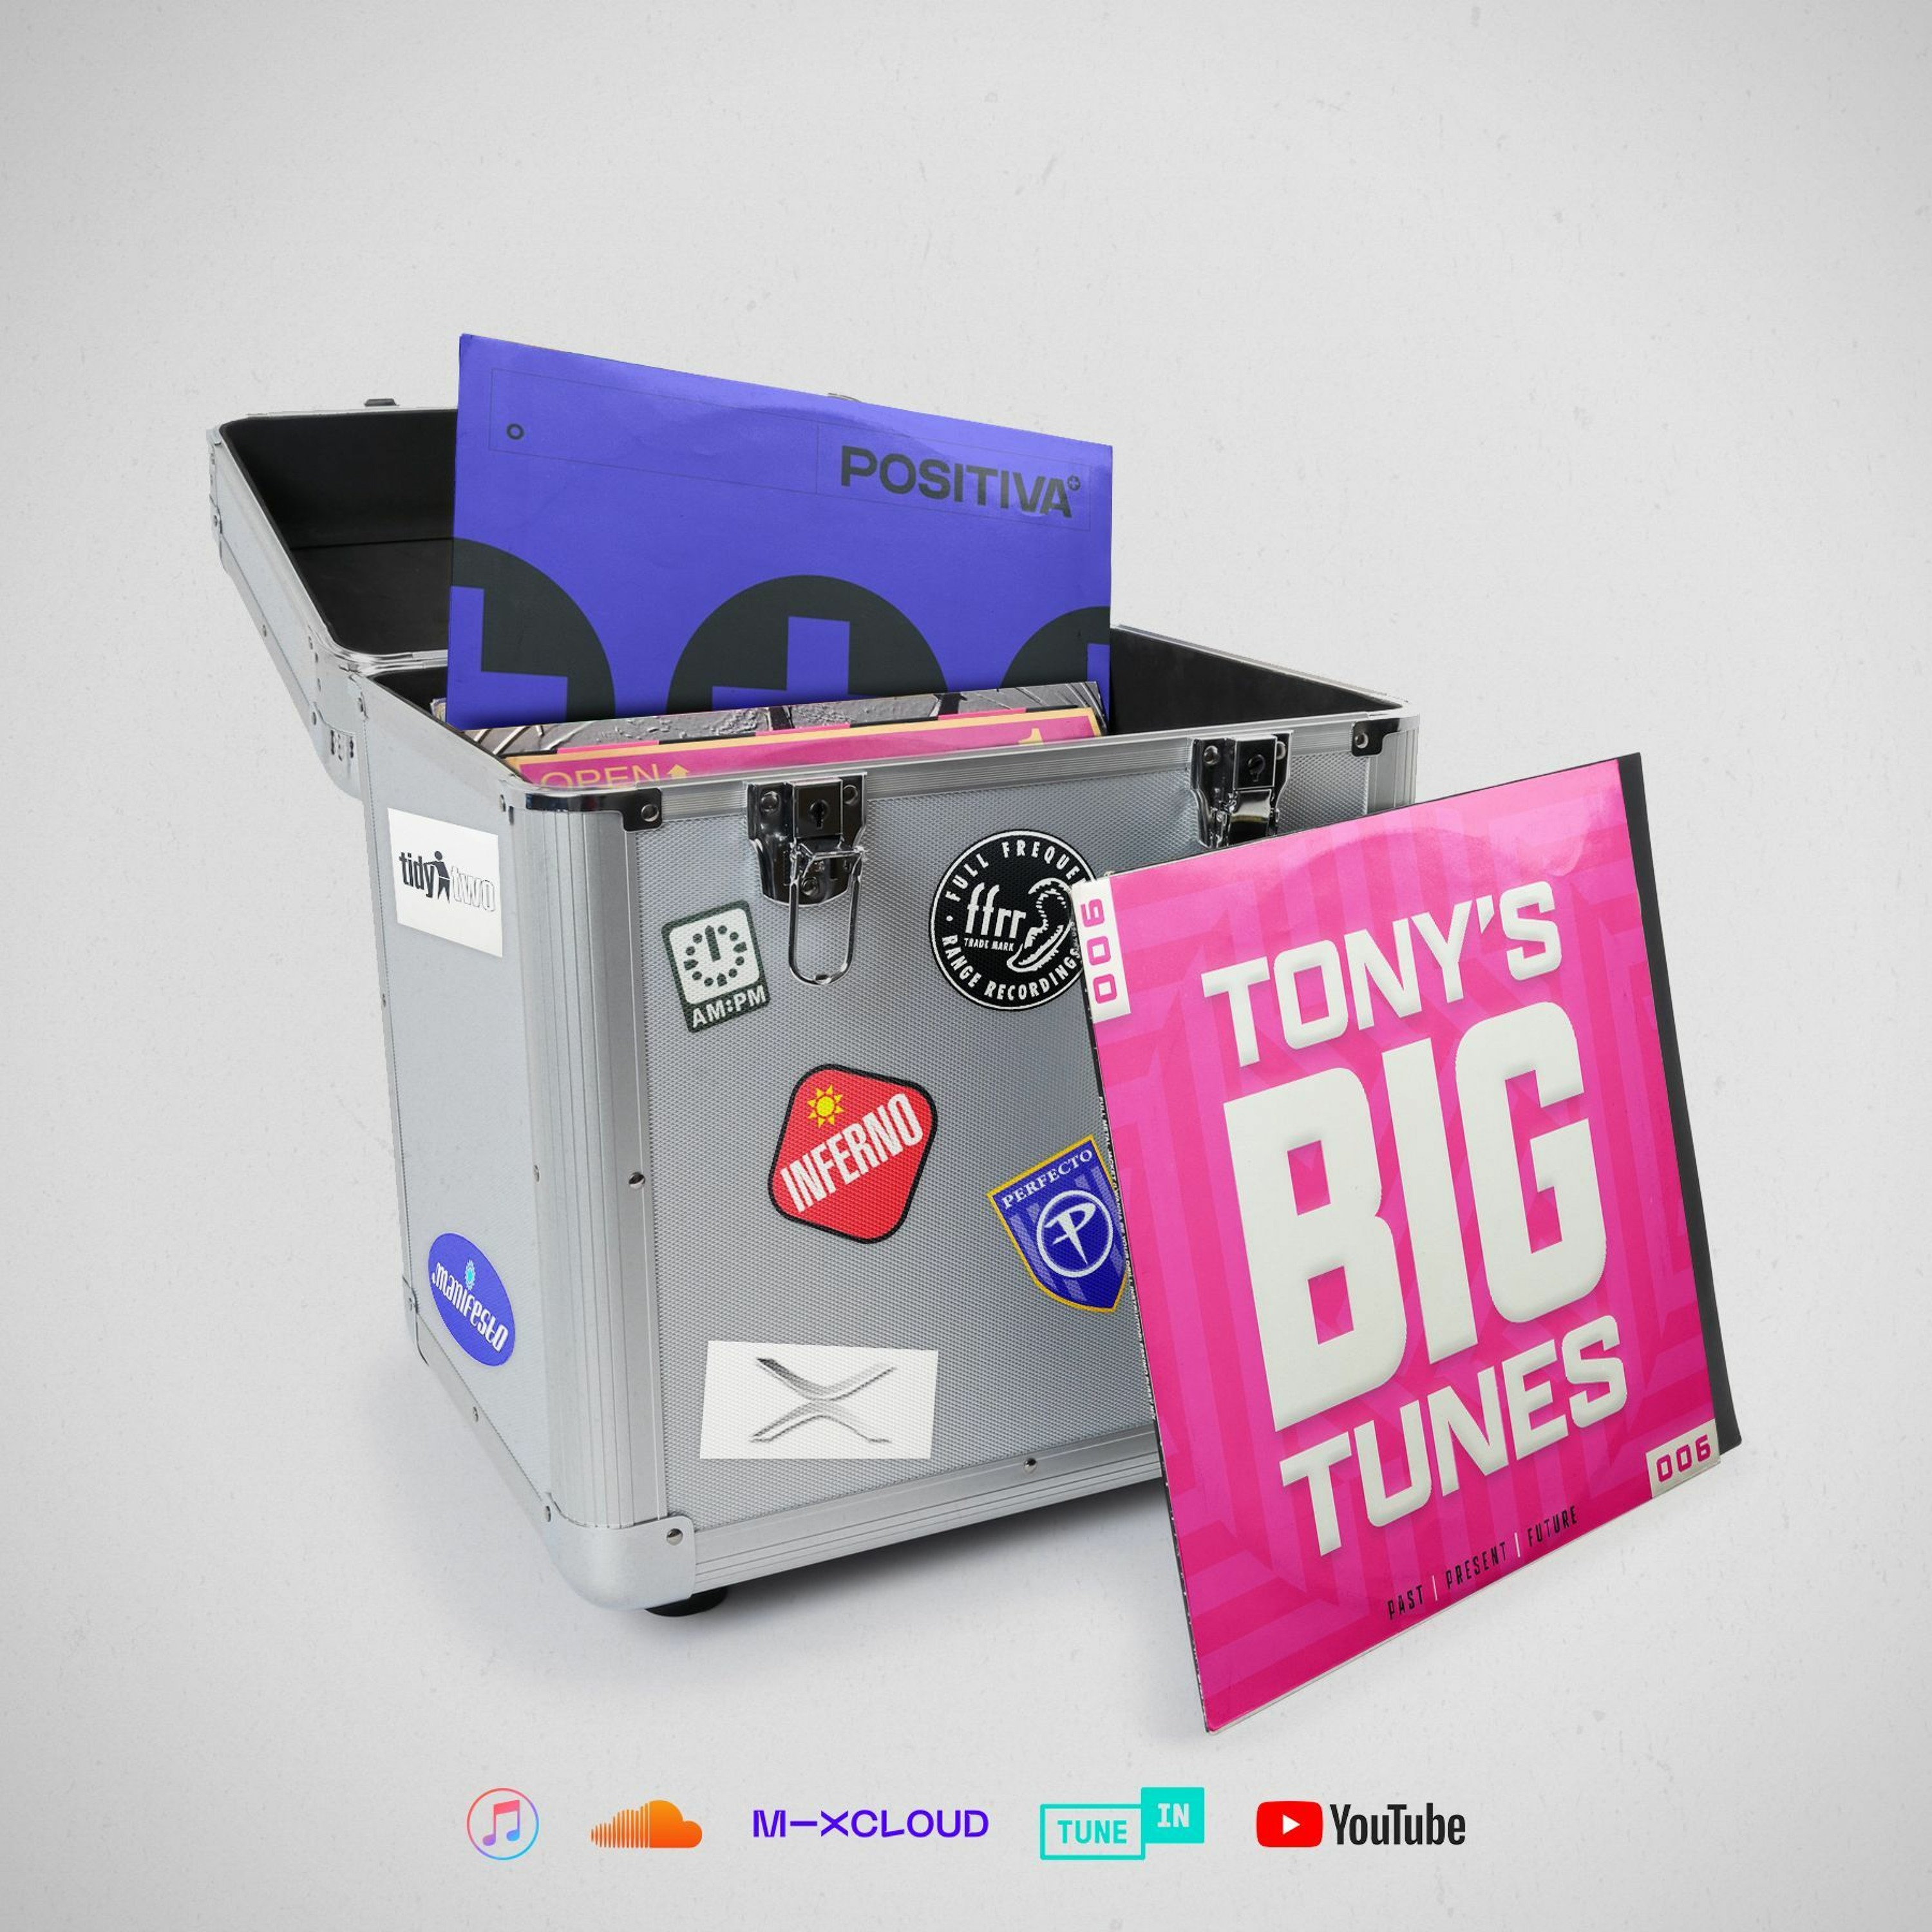 Tony’s BIG Tunes Episode #06